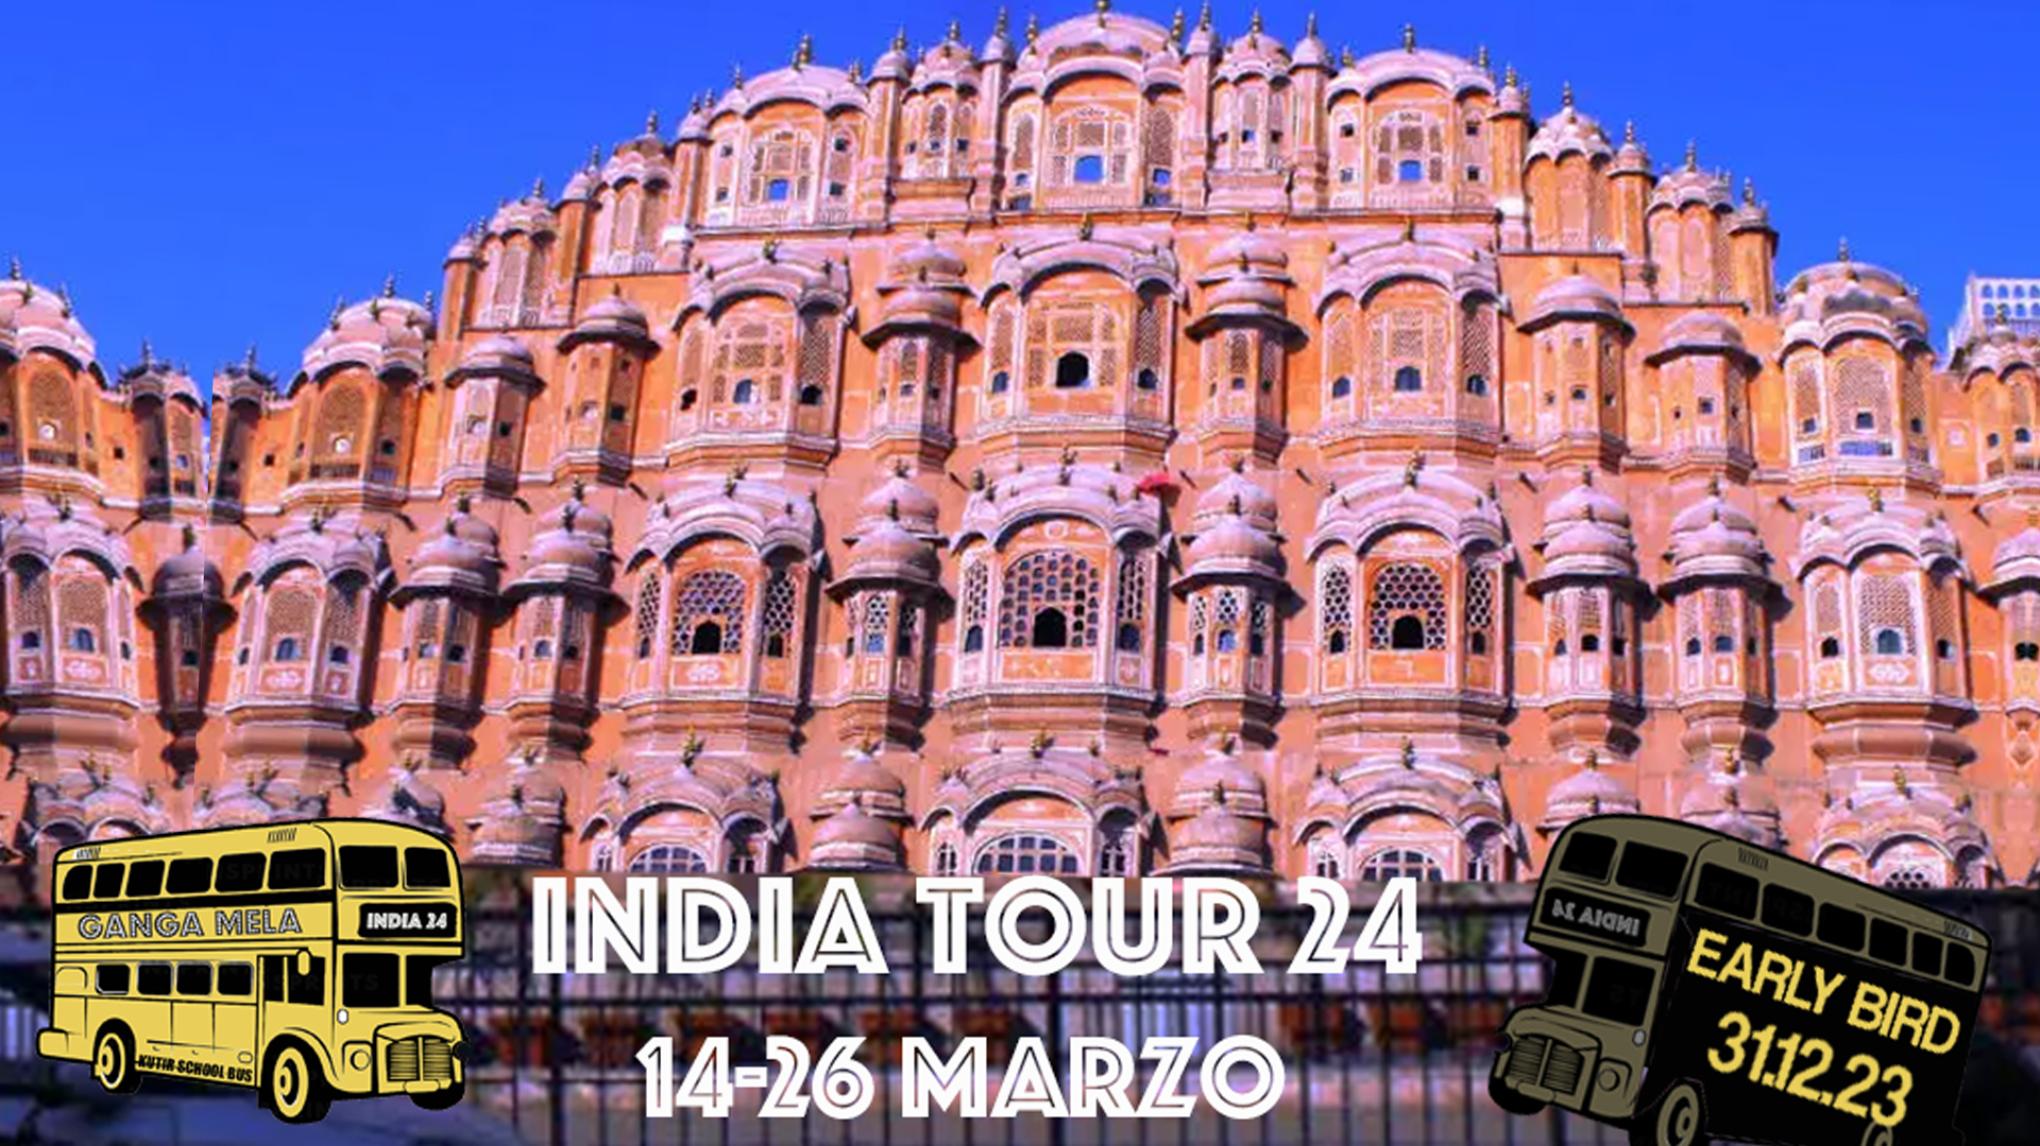 Ganga Mela 24 India Tour & Yoga retreat